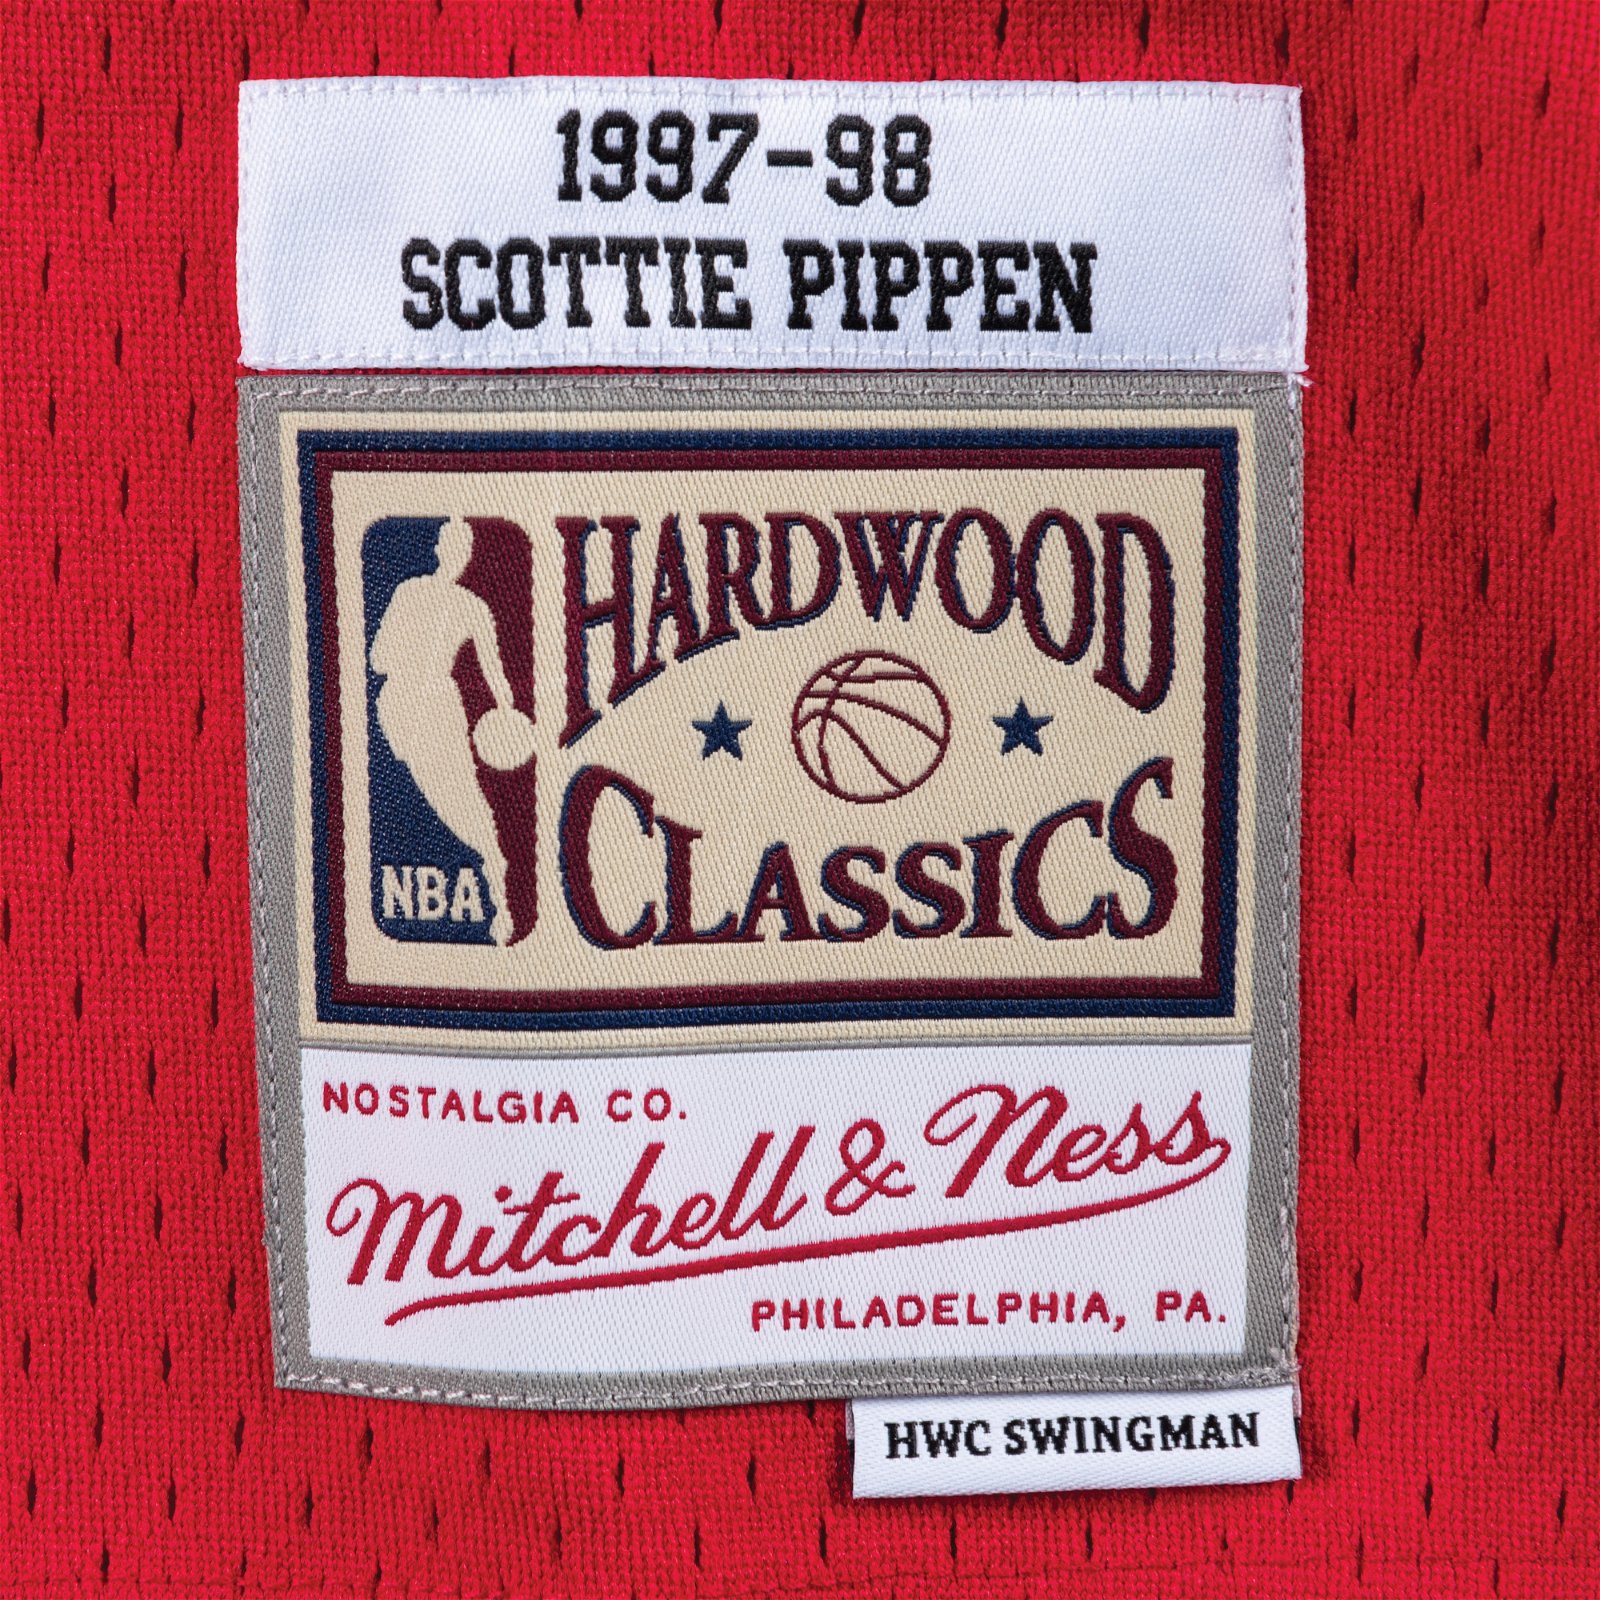 Chicago Bulls Scottie Pippen Swingman Jersey